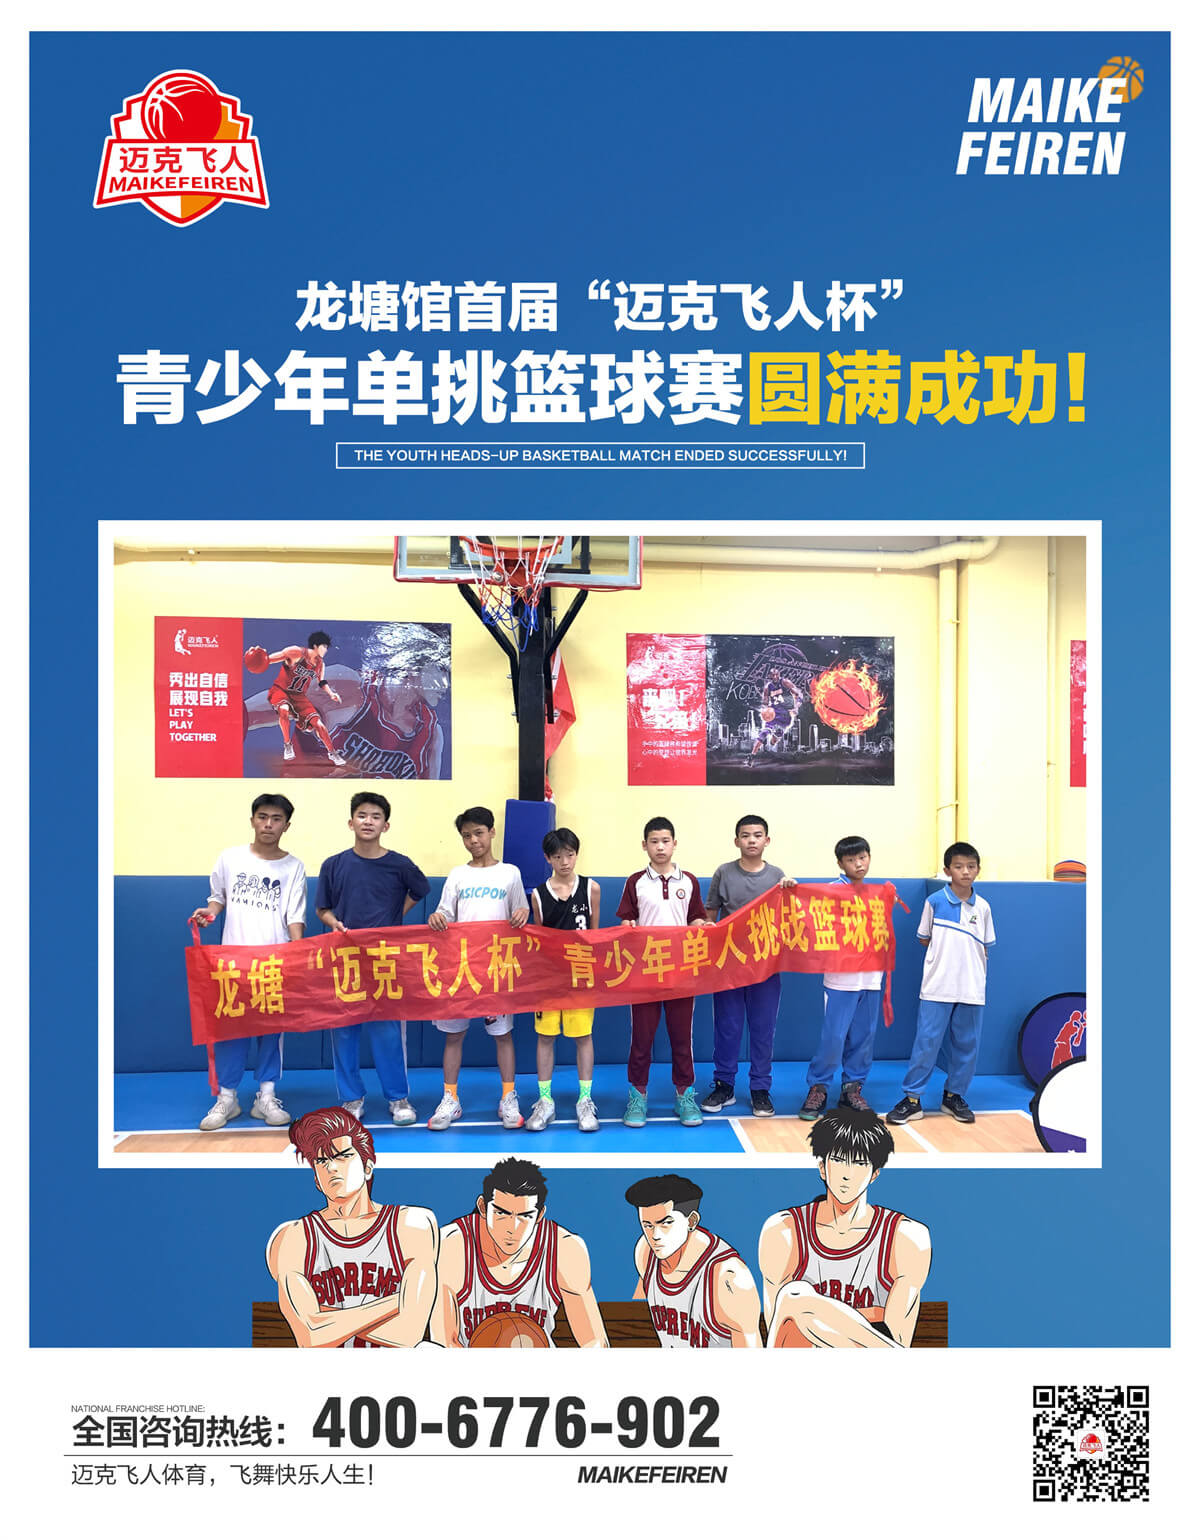 祝贺广东龙塘馆首届“迈克飞人杯”青少年单挑篮球赛圆满成功！